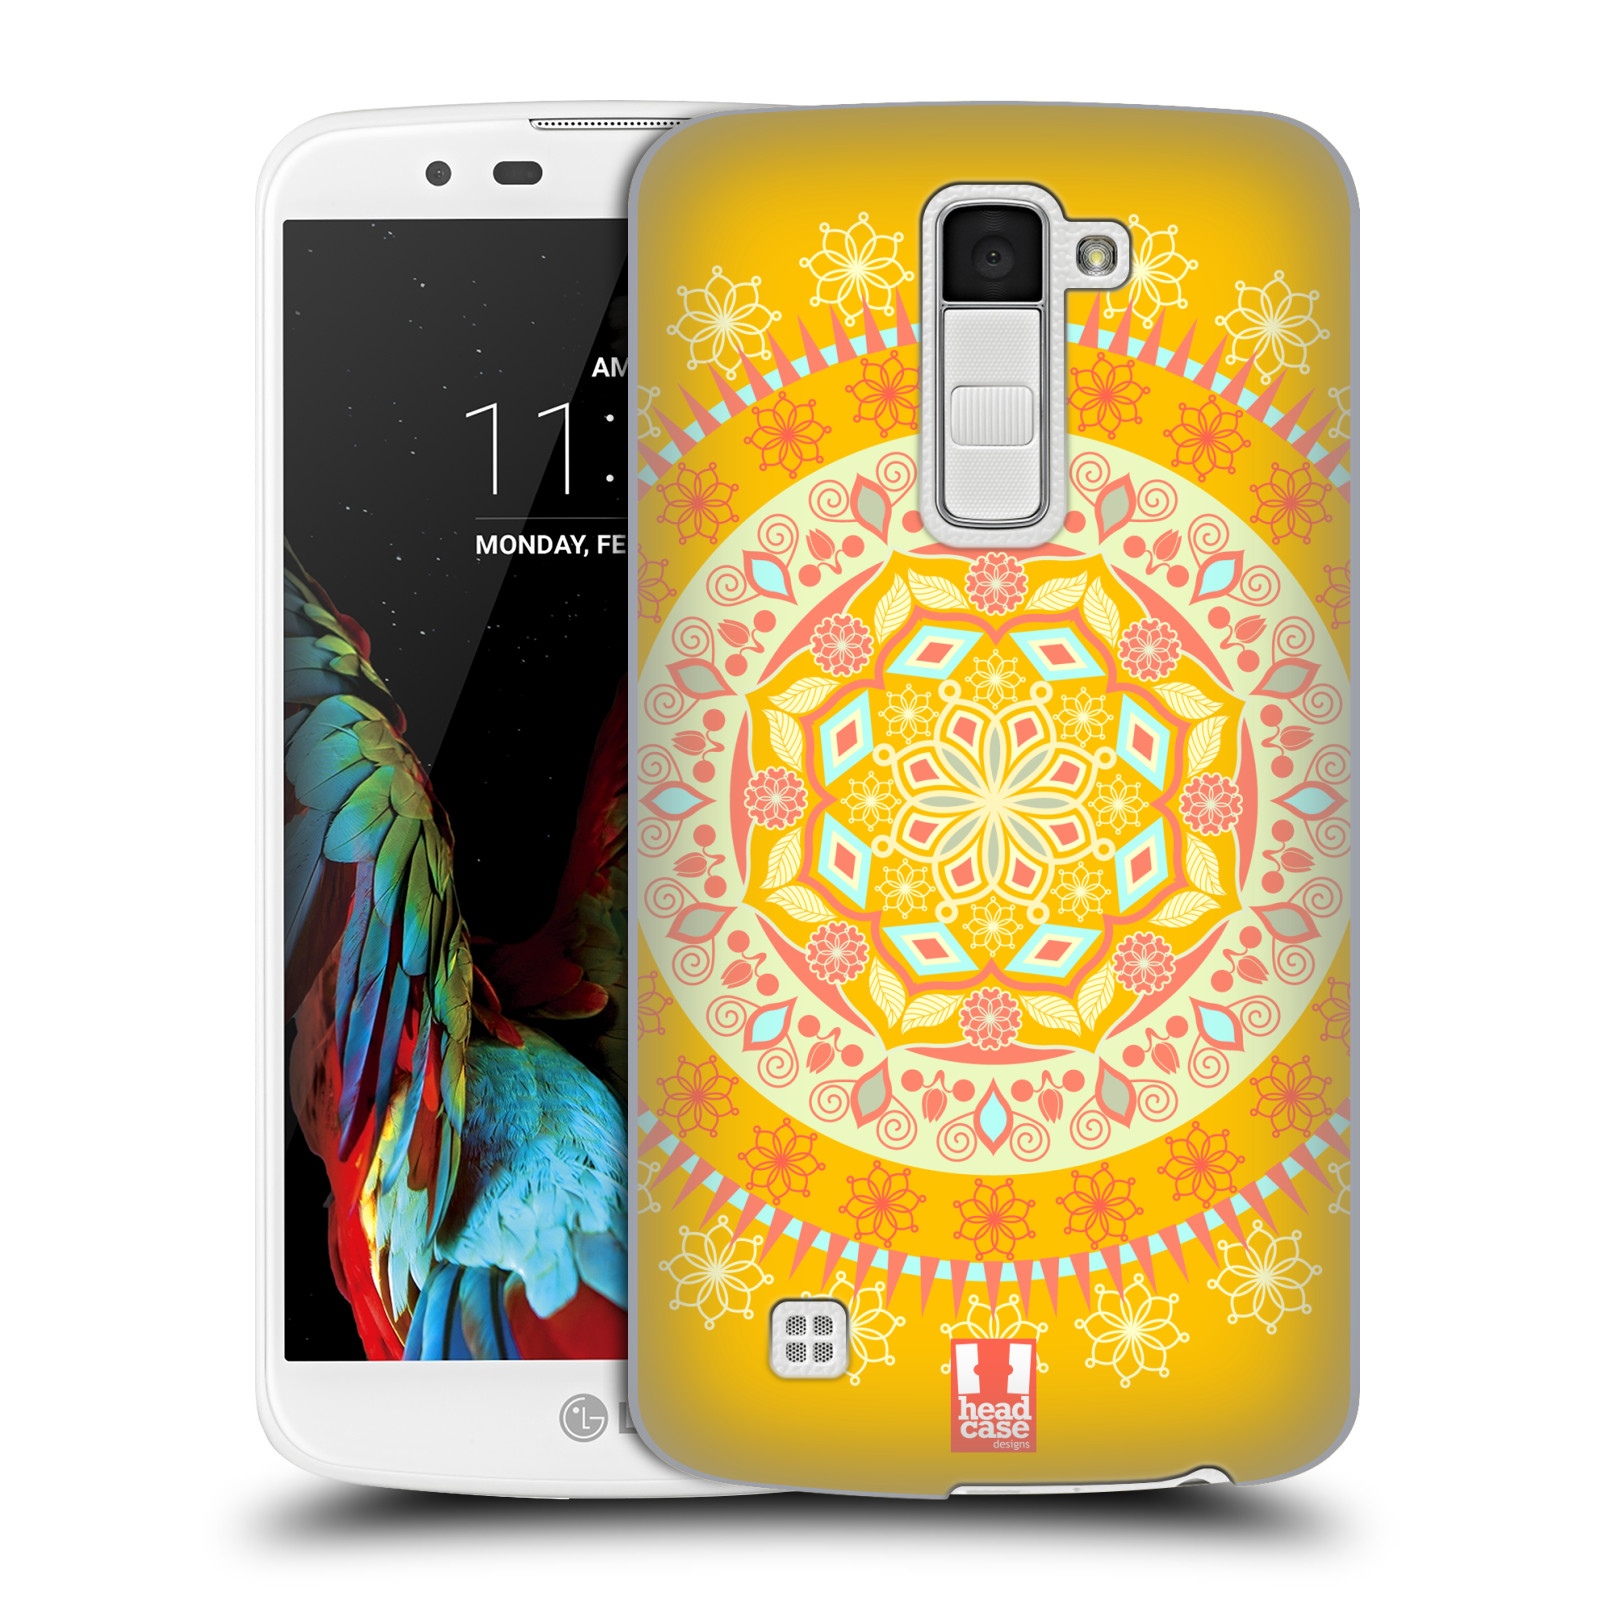 HEAD CASE plastový obal na mobil LG K10 vzor Indie Mandala slunce barevný motiv ŽLUTÁ